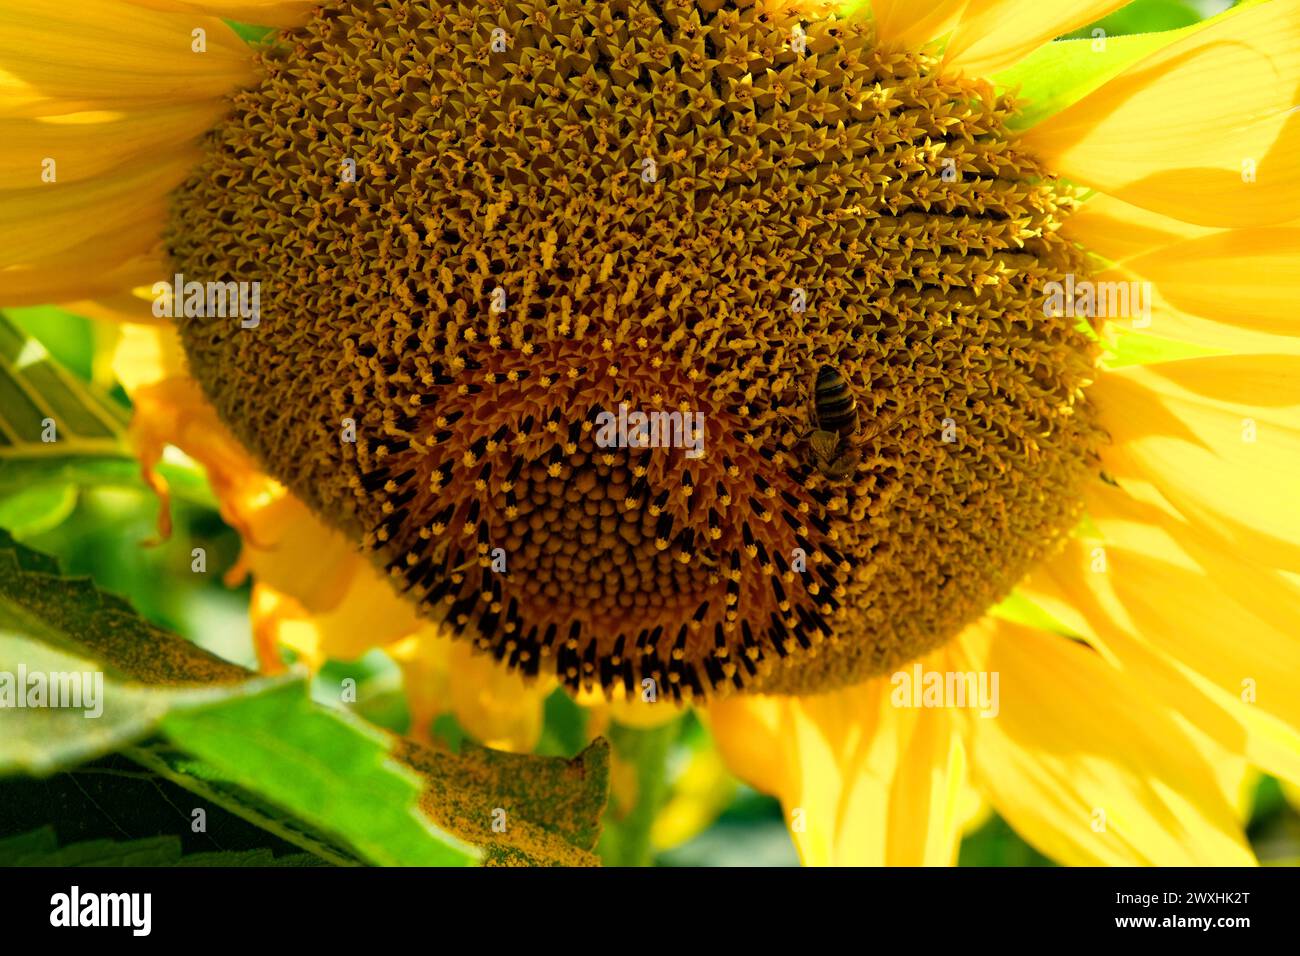 Eine detaillierte Ansicht einer Biene, die Nektar aus den Samen in der Mitte einer blühenden Sonnenblume extrahiert. Stockfoto